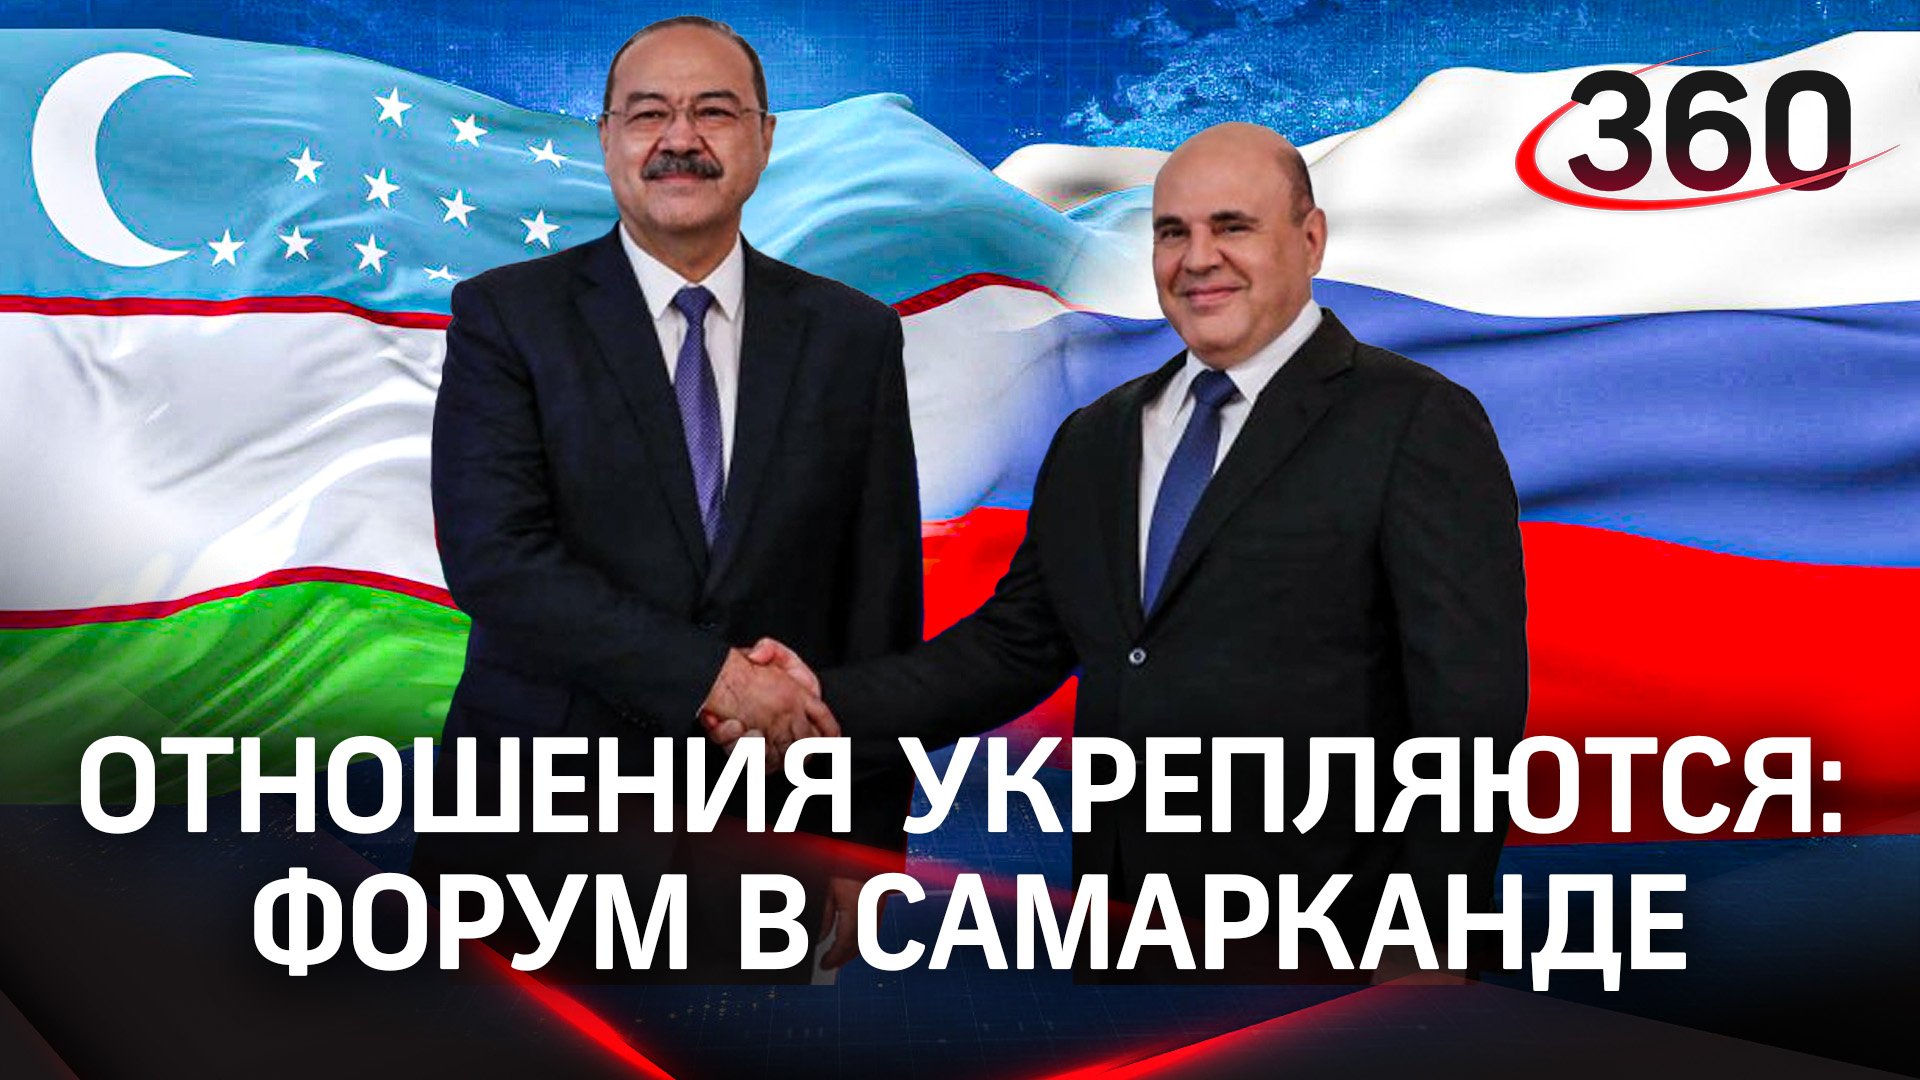 Отношения укрепляются: итоги российско-узбекского бизнес-форума в Самарканде